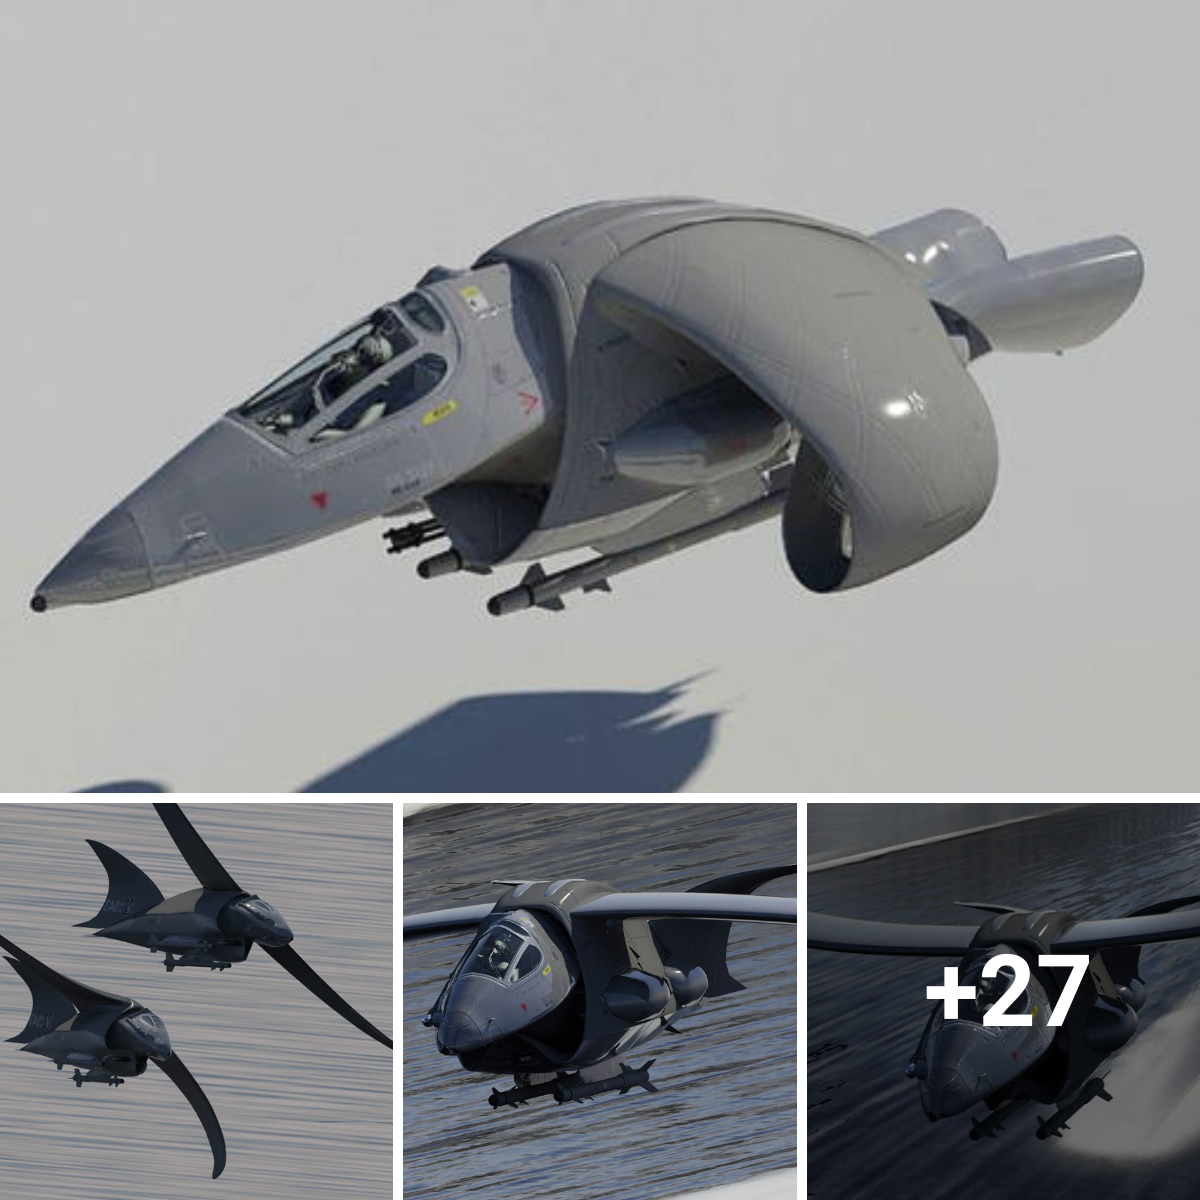 Steve Wheeler’s “Hawk”: A Model Aircraft of Emulation